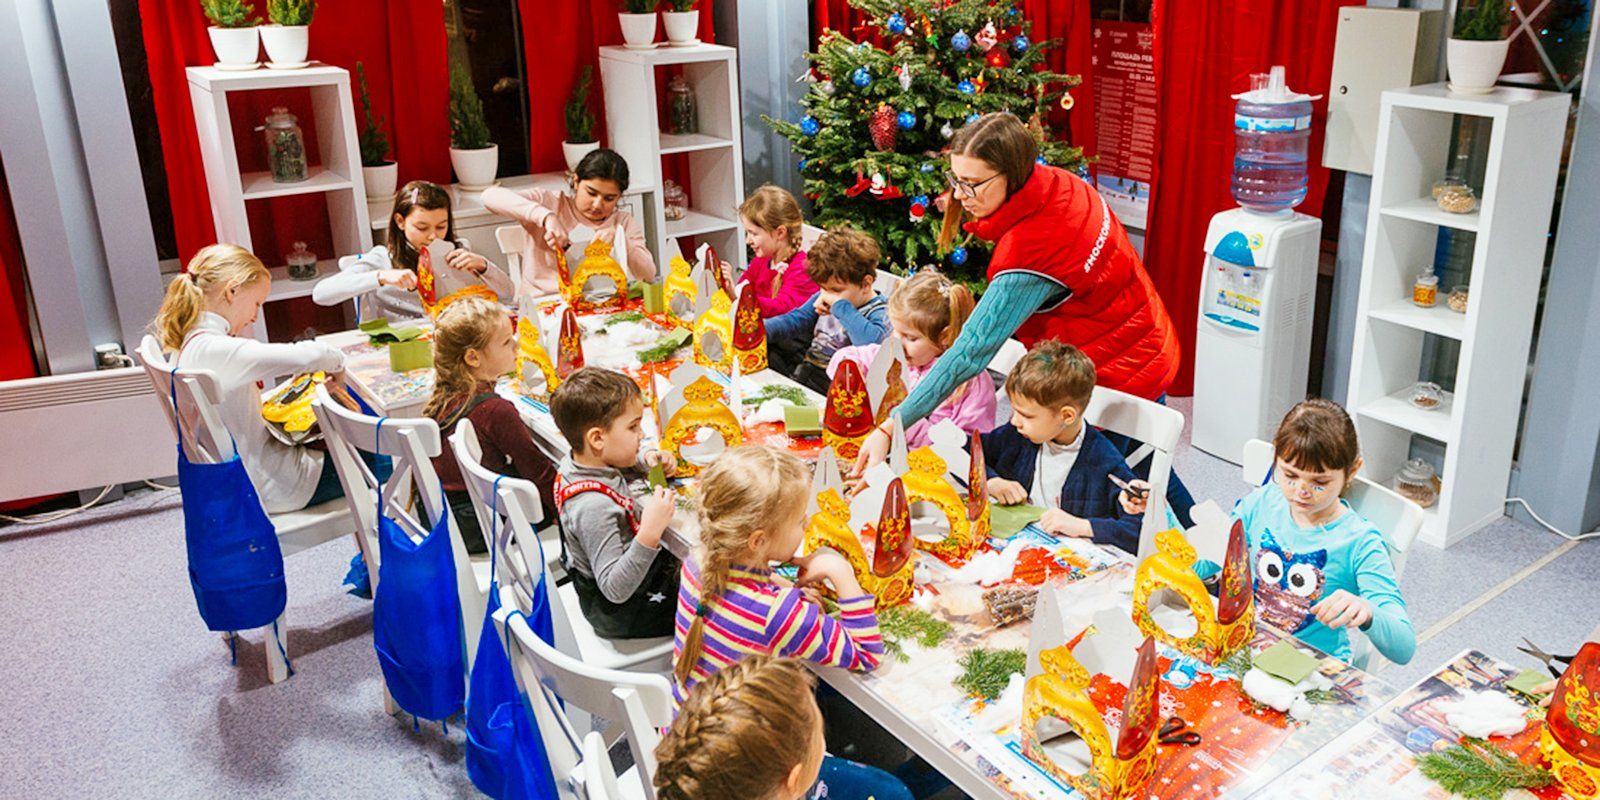 В   Бабушкінському парку   відкриється майстерня Діда Мороза, в   ліанозовської   пройде «Спортивне Різдво», в сквері в   Олонецком проїзді   відбудуться тематичні заходи «Новорічний подарунок», а в   парку «Кузьменко»   всіх чекає «Різдвяна симфонія»